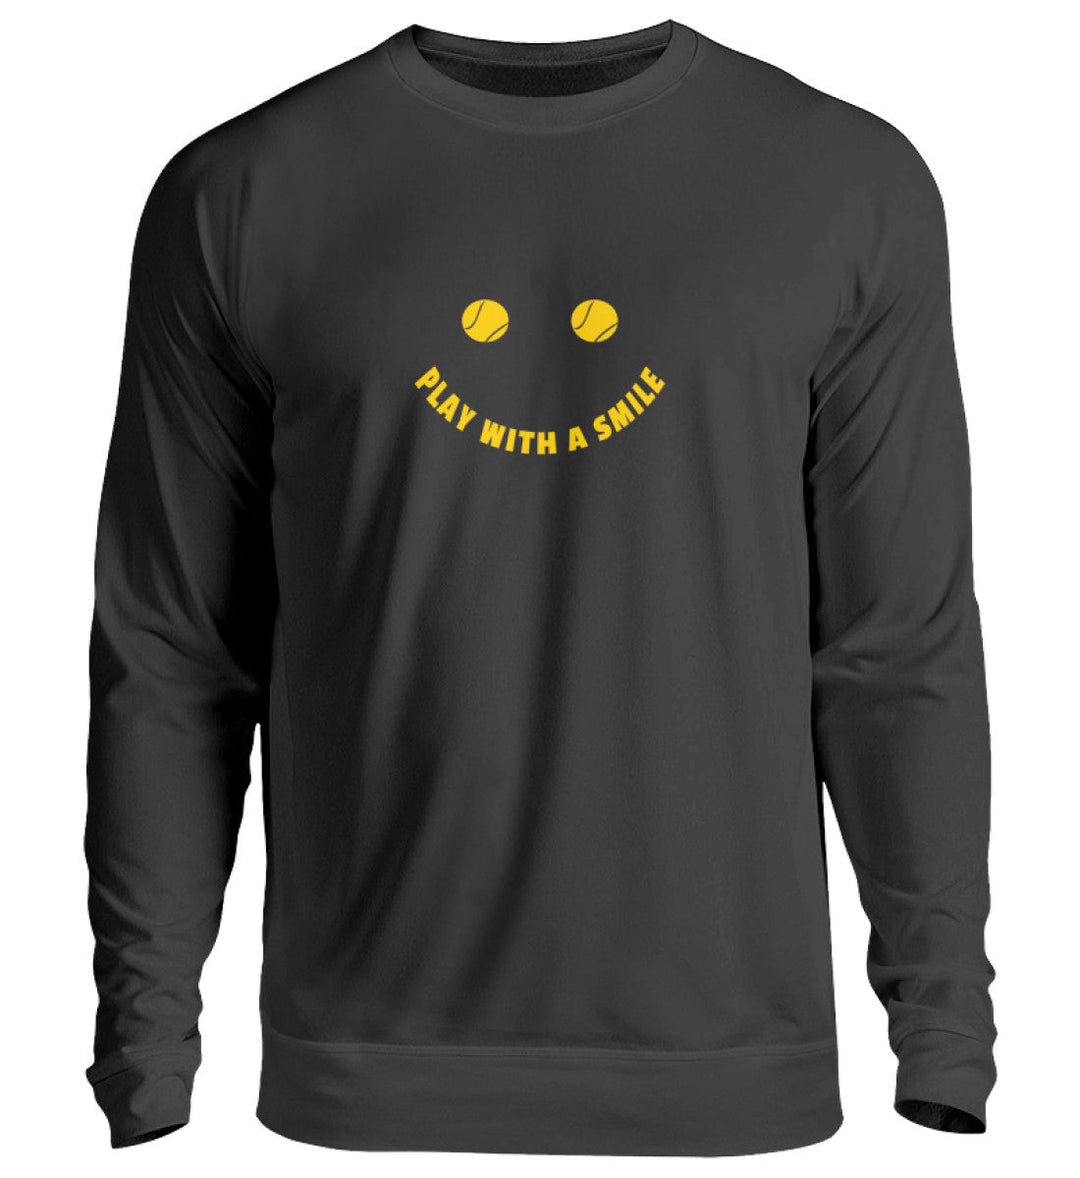 Play with a smile | Sweatshirt (Unisex) - Matchpoint24 - Kleidung für Tennisfans